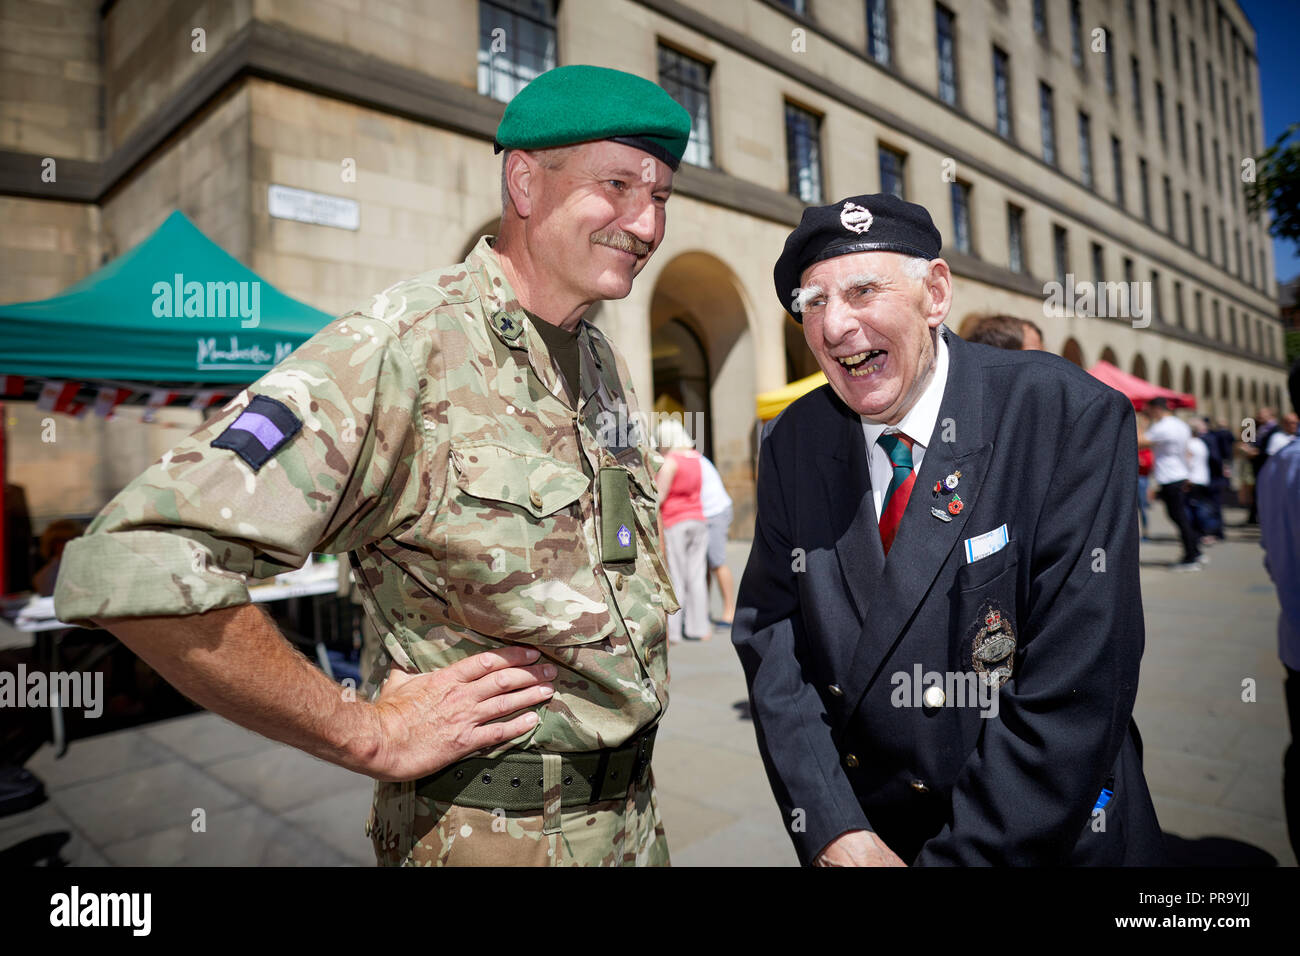 Manchester celebra le forze armate giorno in Pietro Jack Wilson di età compresa tra i 88 dalla vendita in chat con servizio miglio Newman 6MI Foto Stock